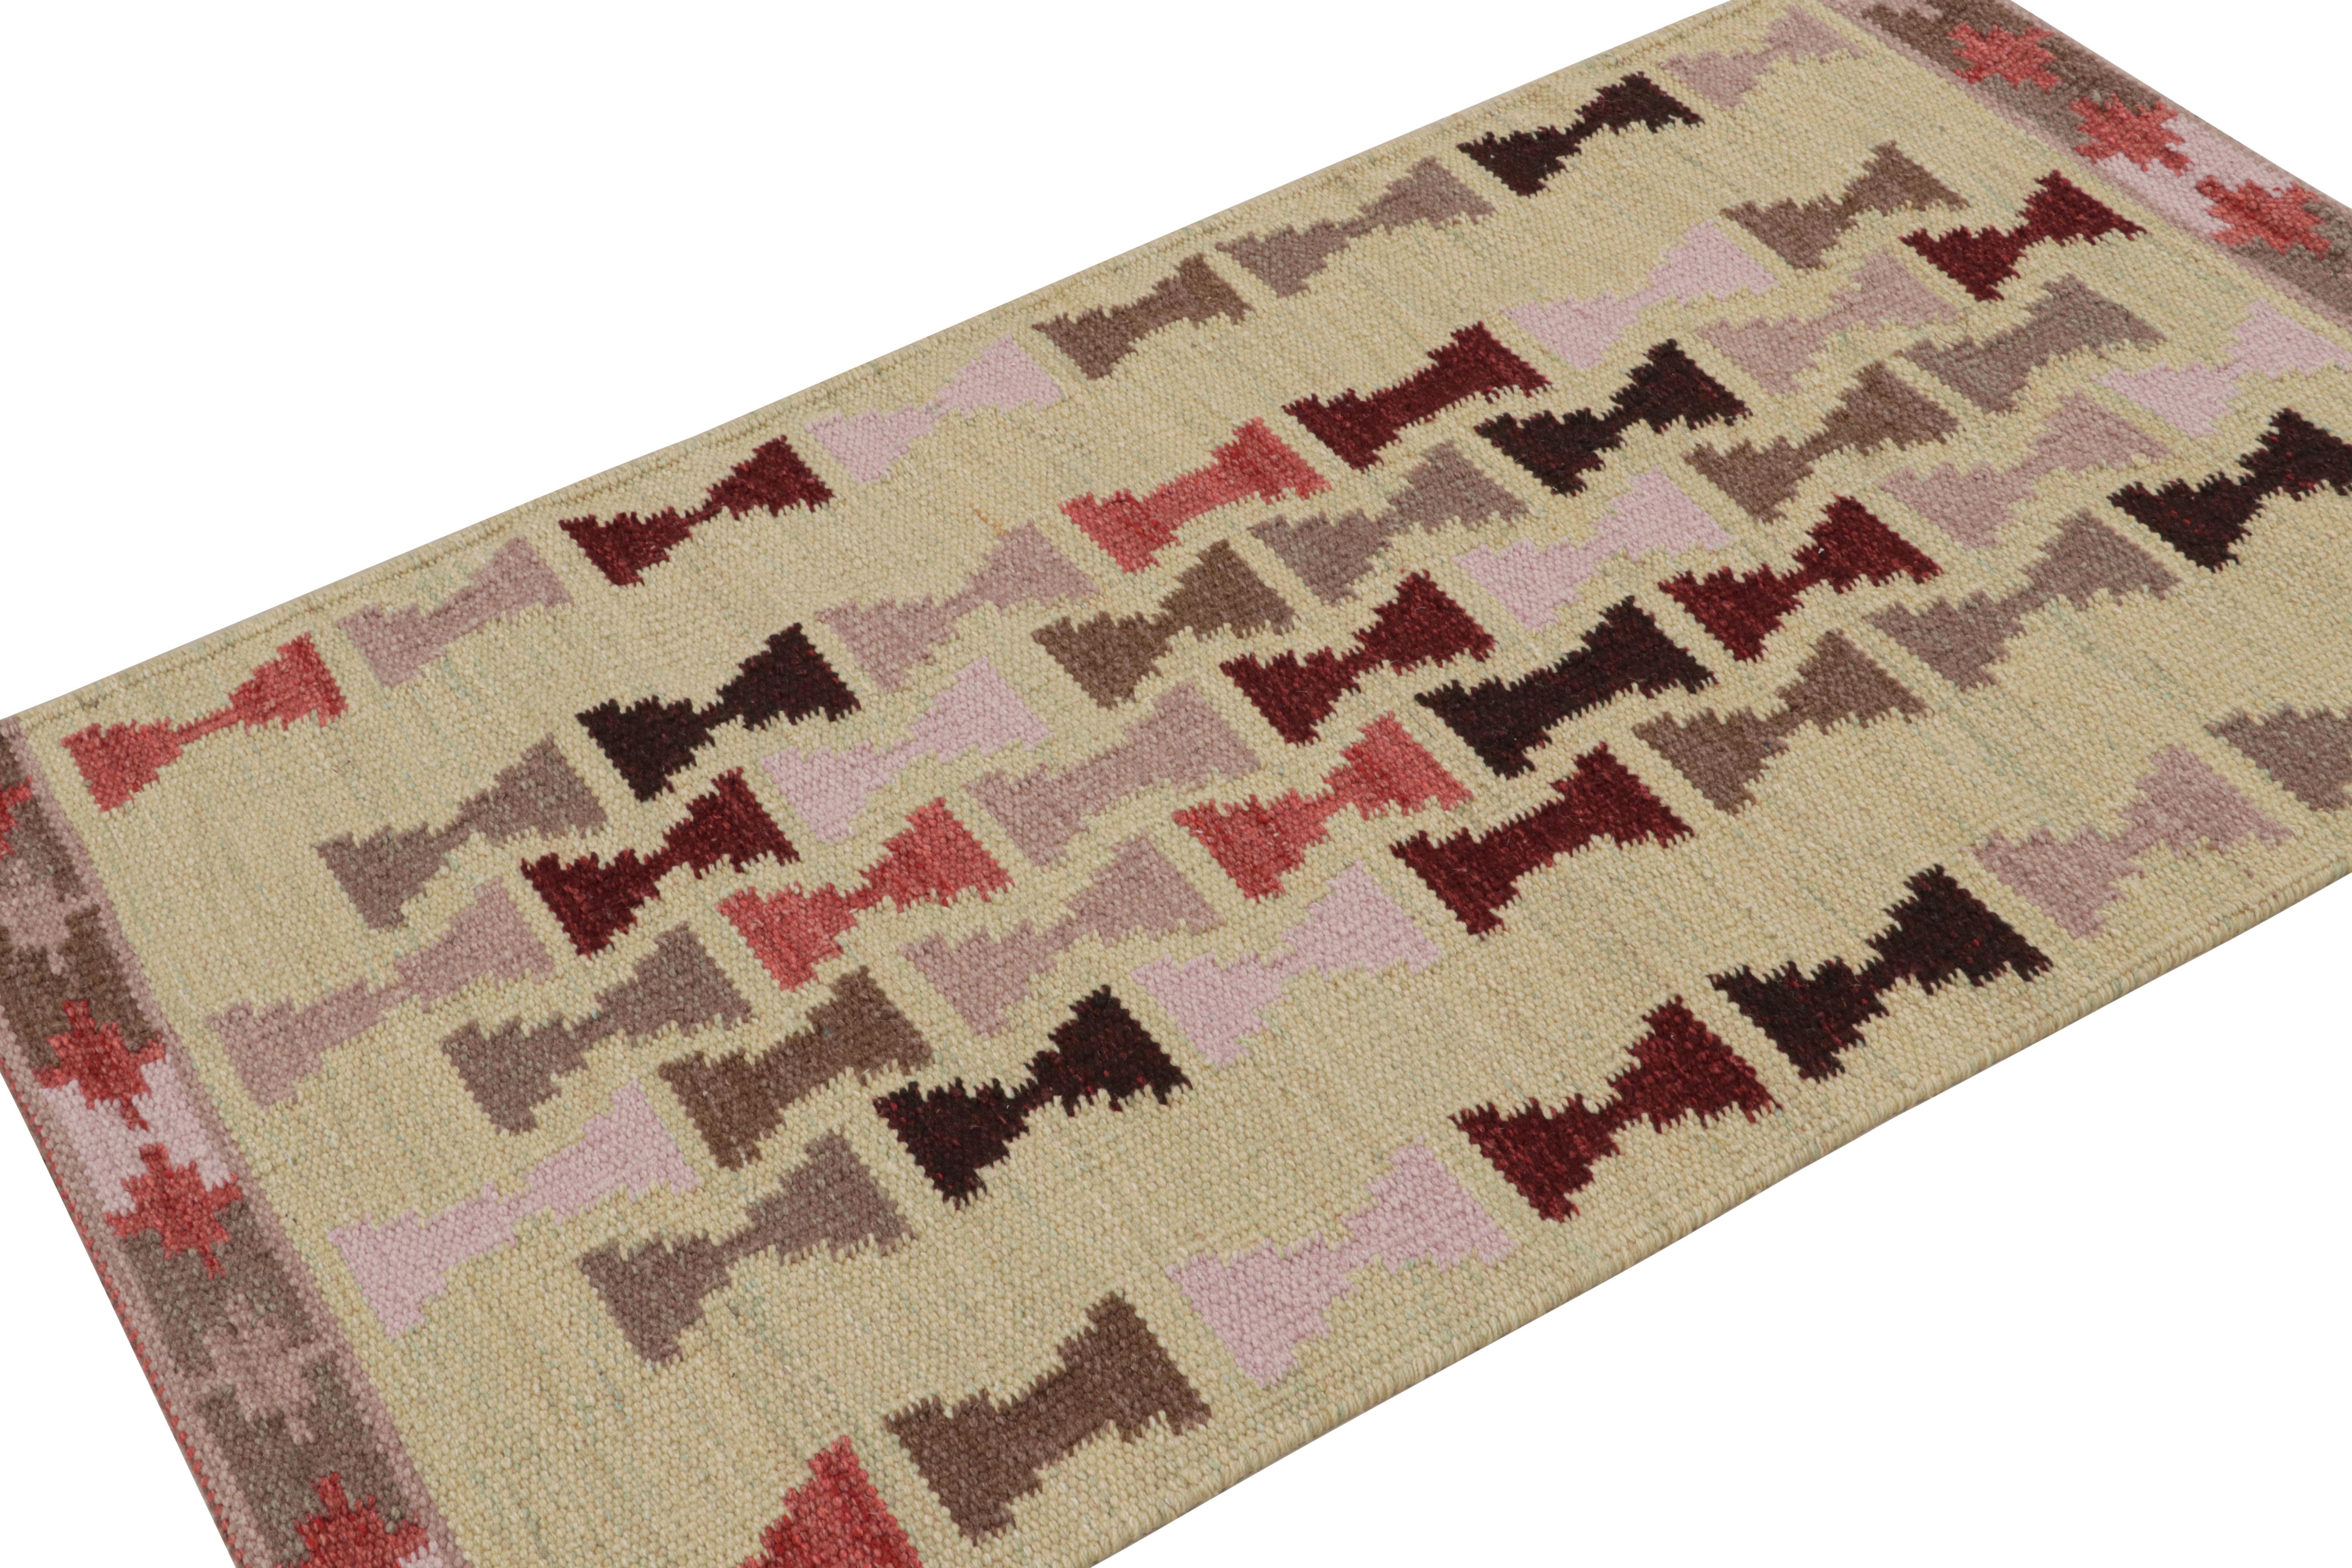 Tissé à la main en laine, ce tapis d'accent suédois 3x5 fait partie de la collection de tapis scandinaves de Rug & Kilim.

Sur le Design/One

Dans ce design, la couleur crème souligne les motifs géométriques inspirés des sabliers du style